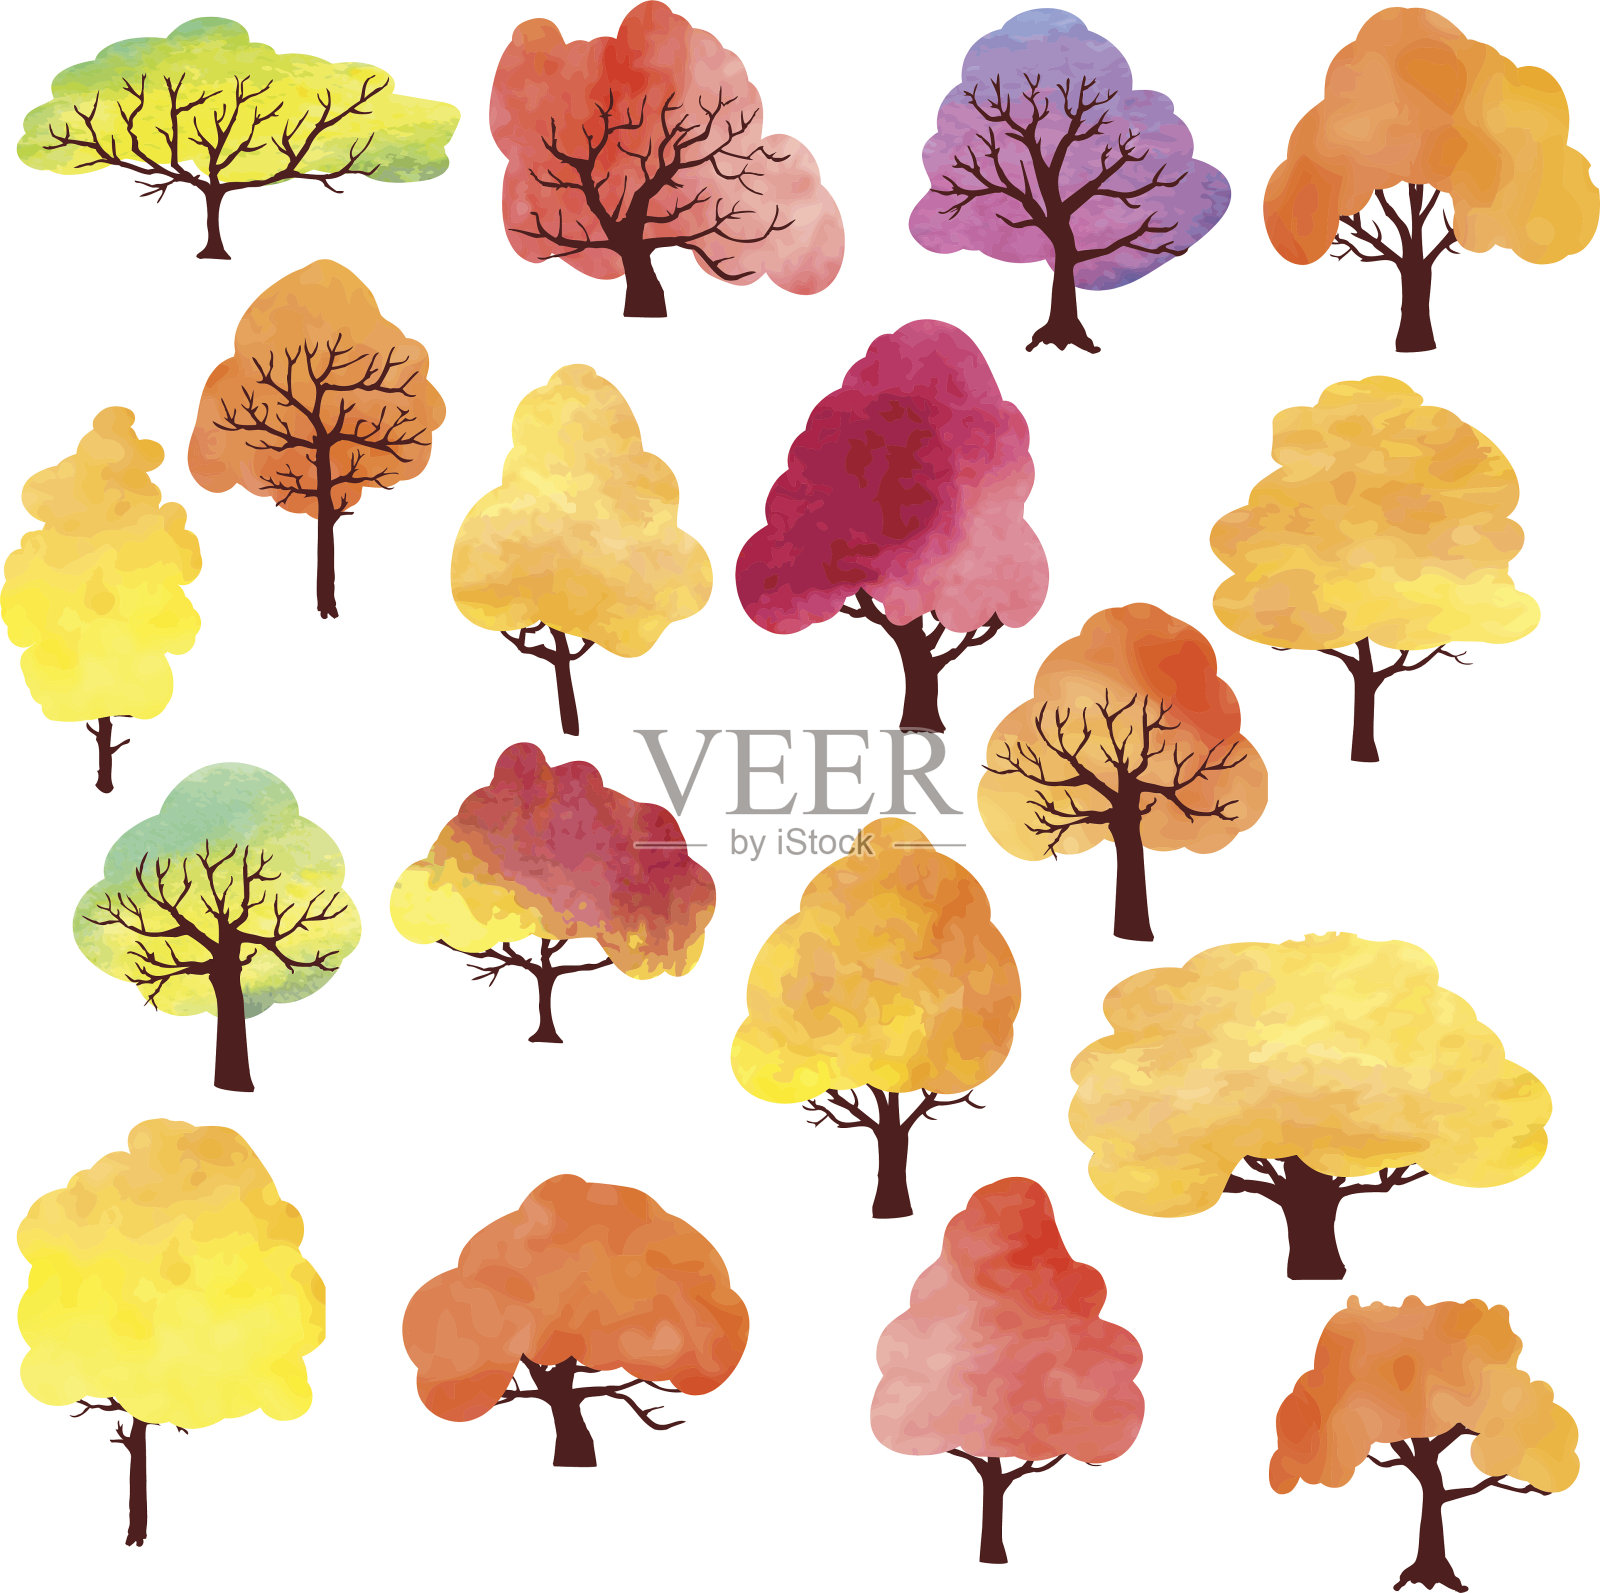 用水彩画的不同秋天的树木设计元素图片